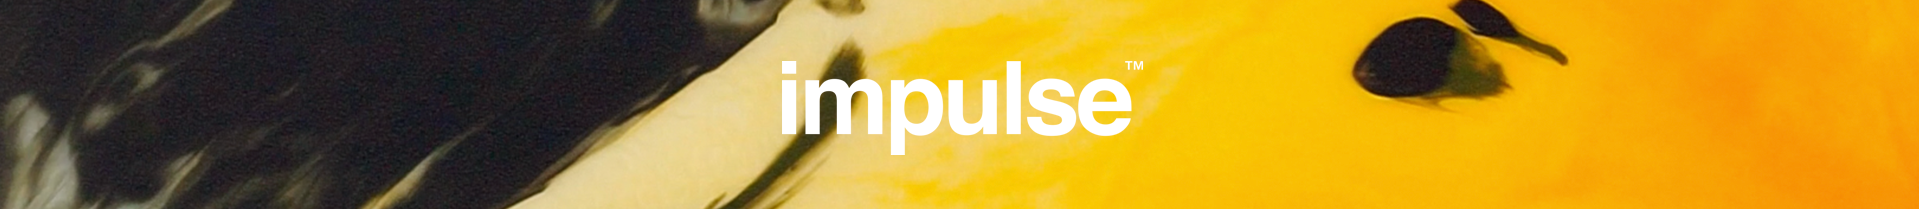 Impulse Branding & Web's profile banner